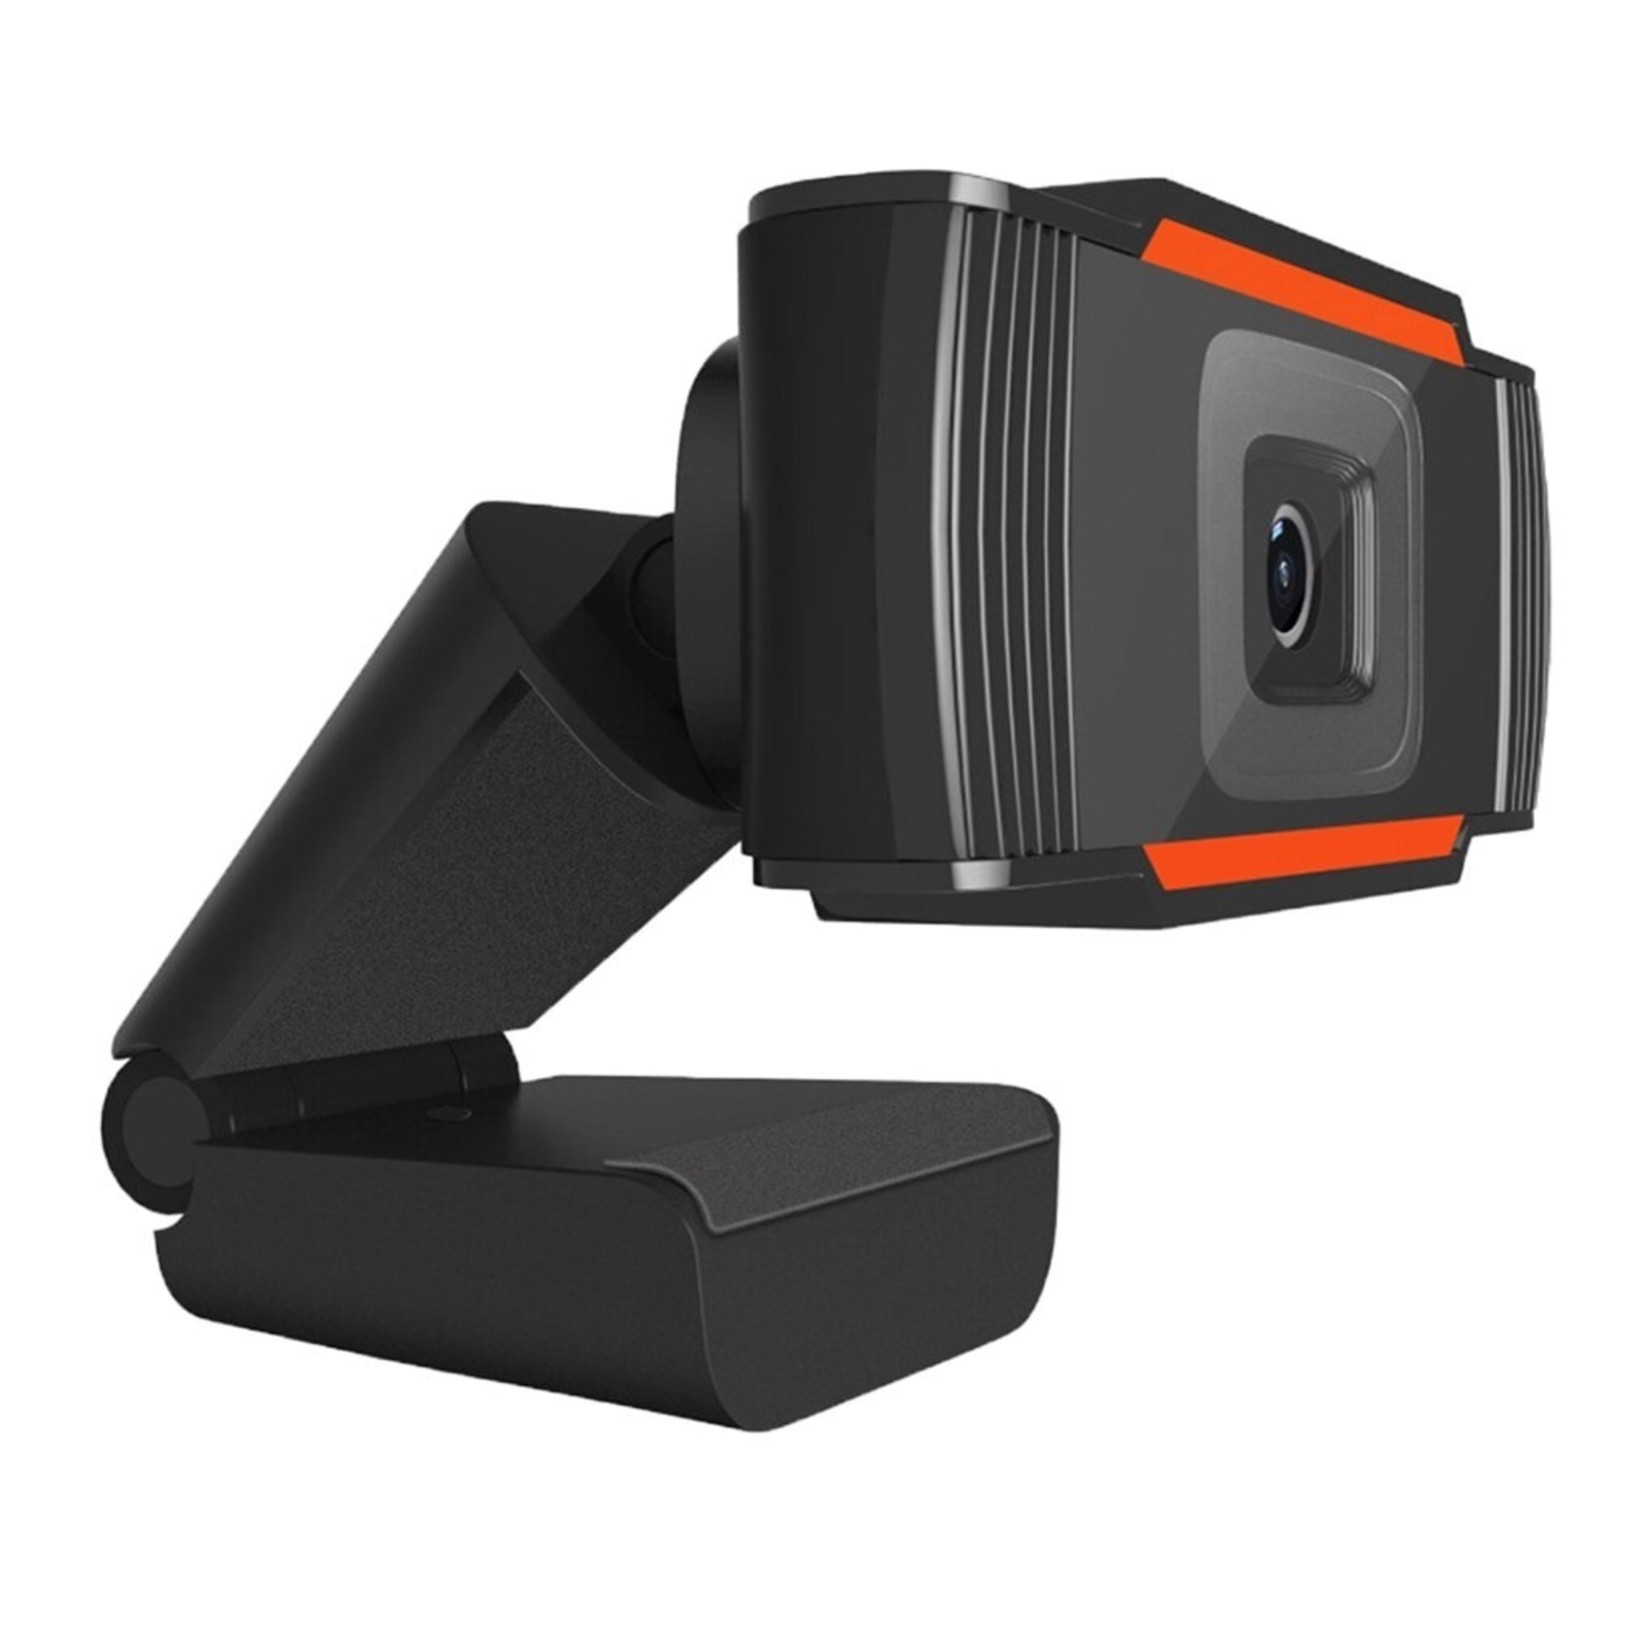 2020 Draaibare HD Webcam PC Mini USB 2.0 Webcamera Video-opname High definitie met 1080P ware kleurenbeelden